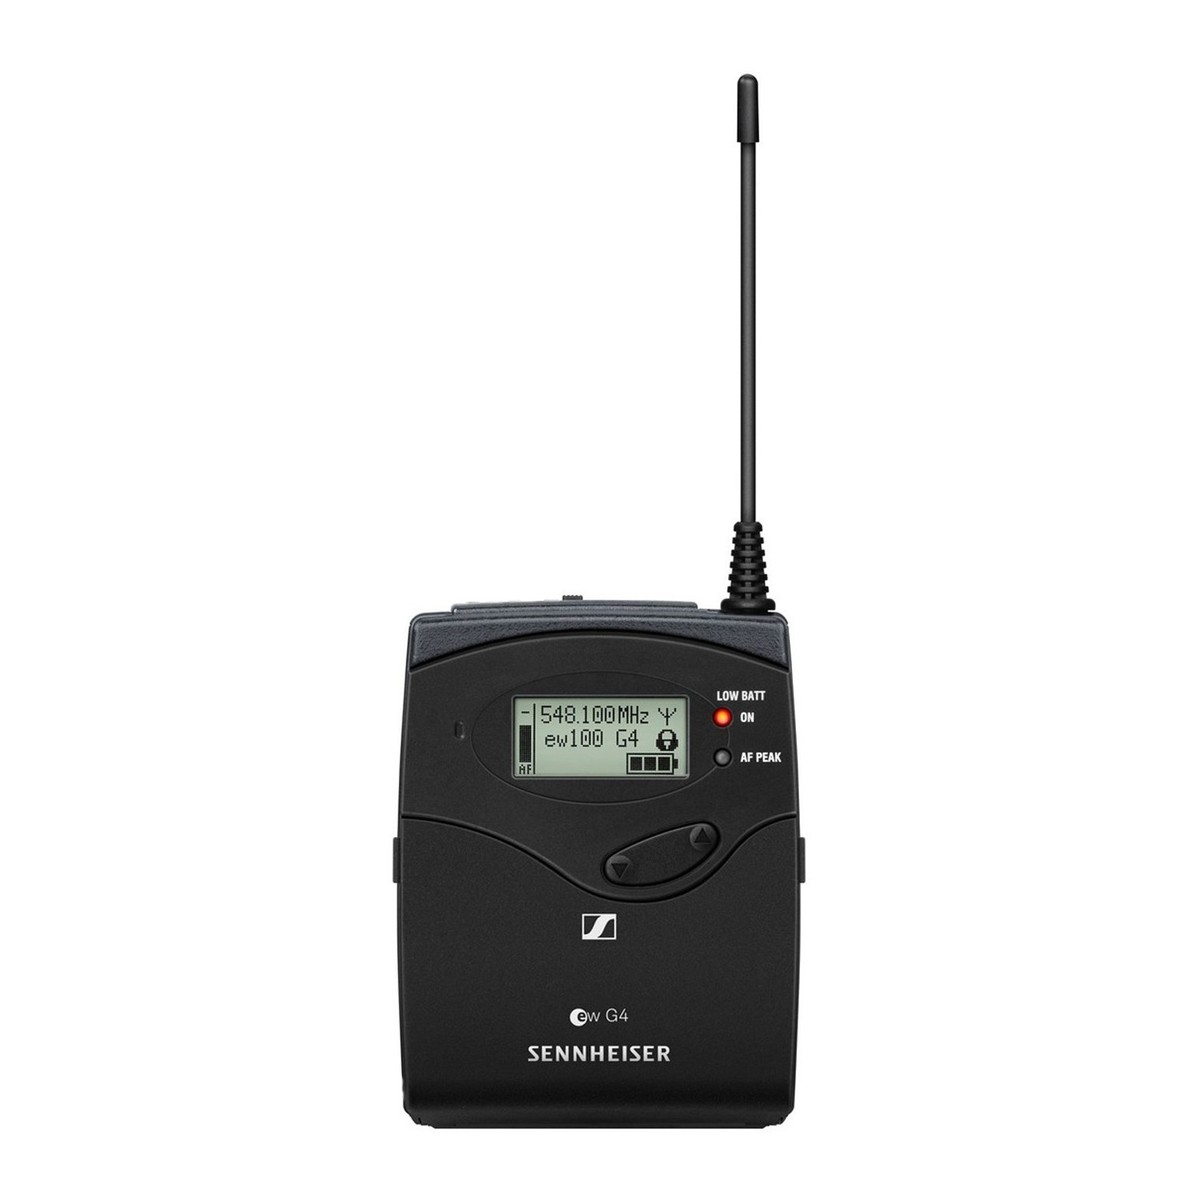 SENNHEISER EW100 G4 ME3 RANGE A RADIOMICROFONO AD ARCHETTO CAPSULA SUPERCARDIOIDE 516 – 558 Mhz 3